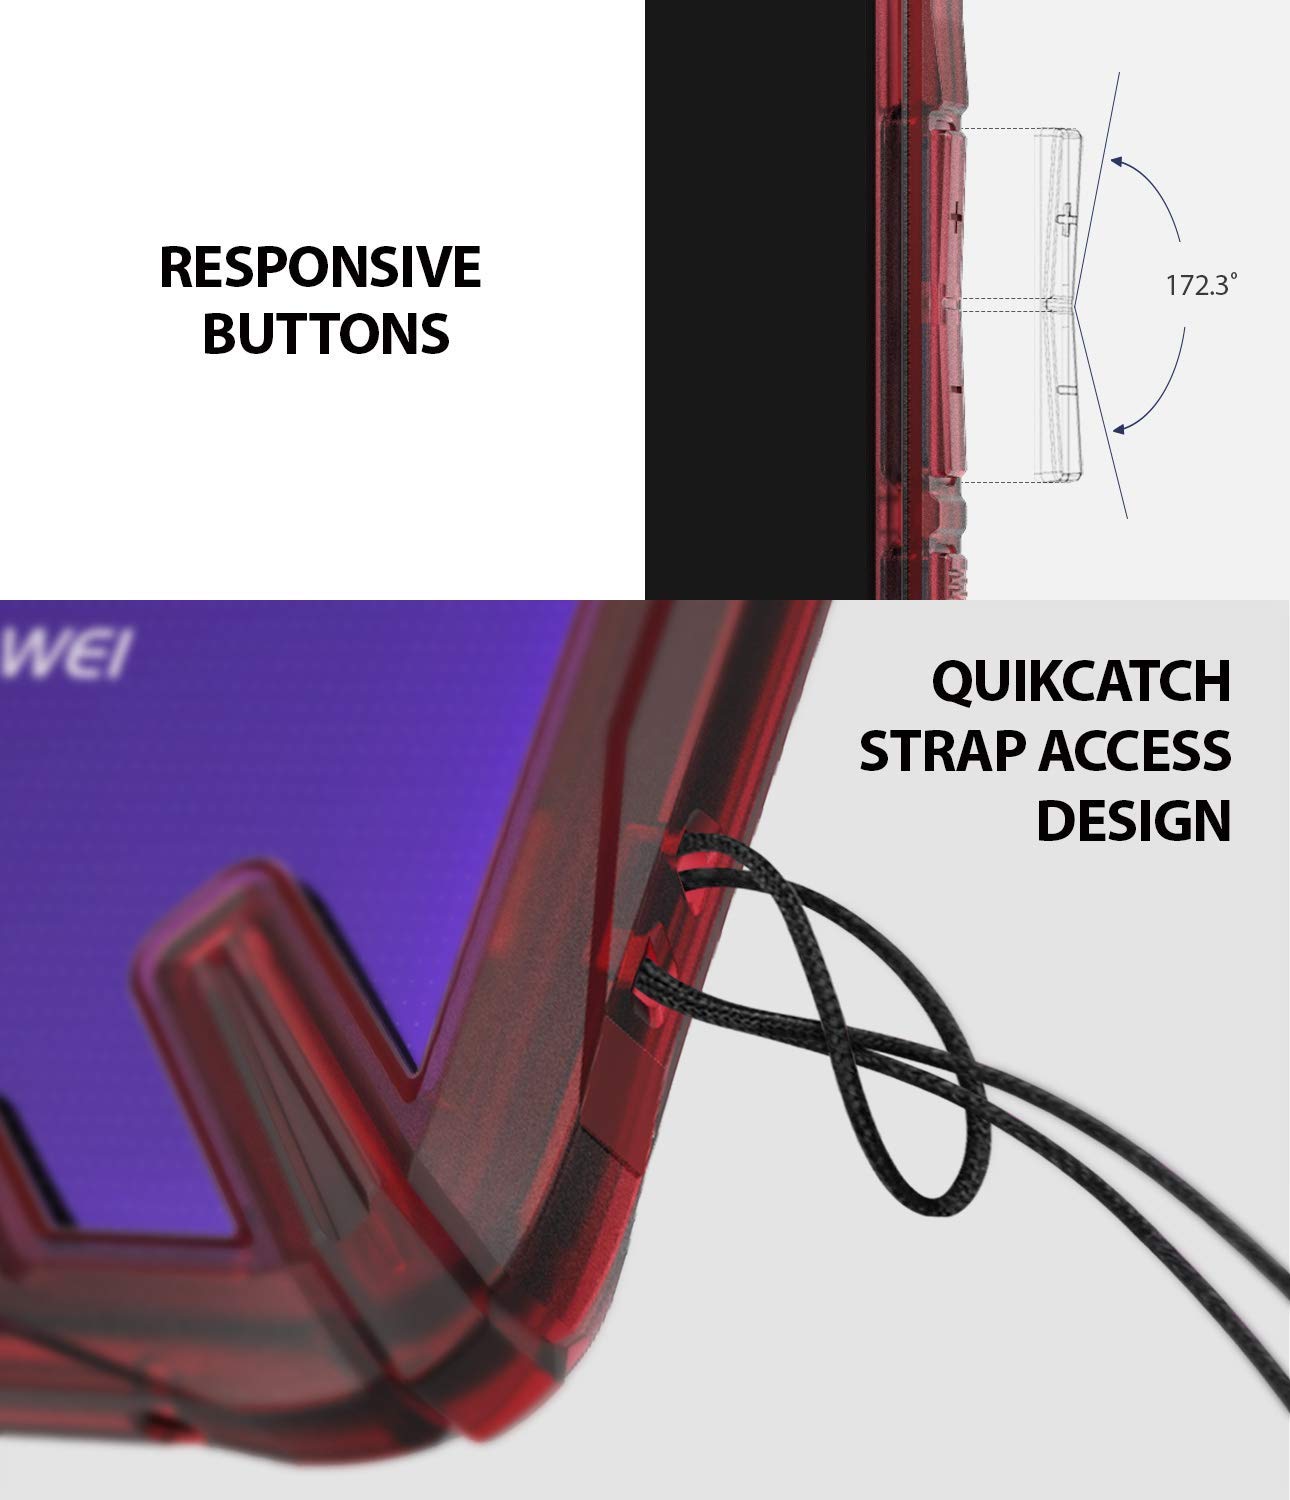 responsive buttons / quikcatch strap access design